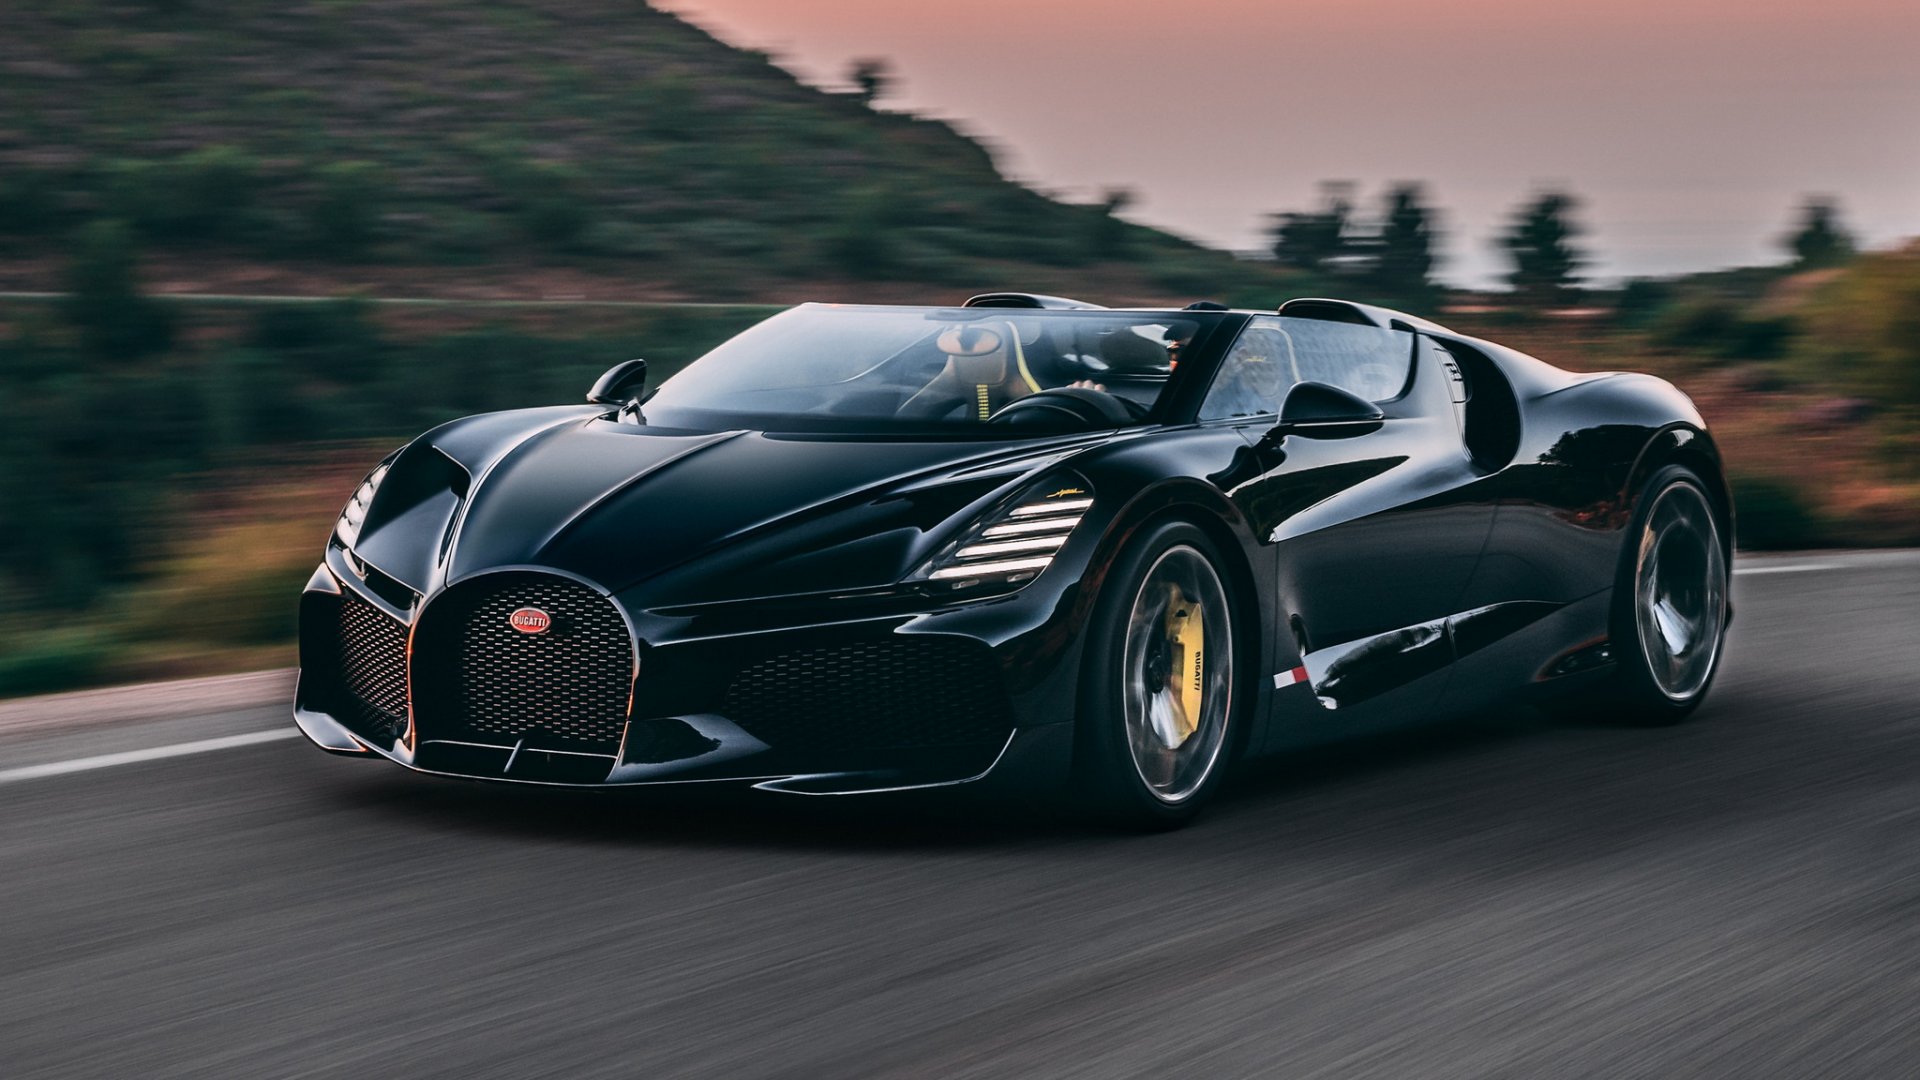 รับชมภาพงามๆ Bugatti Mistral เดินทางมาพบสายลมที่เป็นที่มาของชื่อ